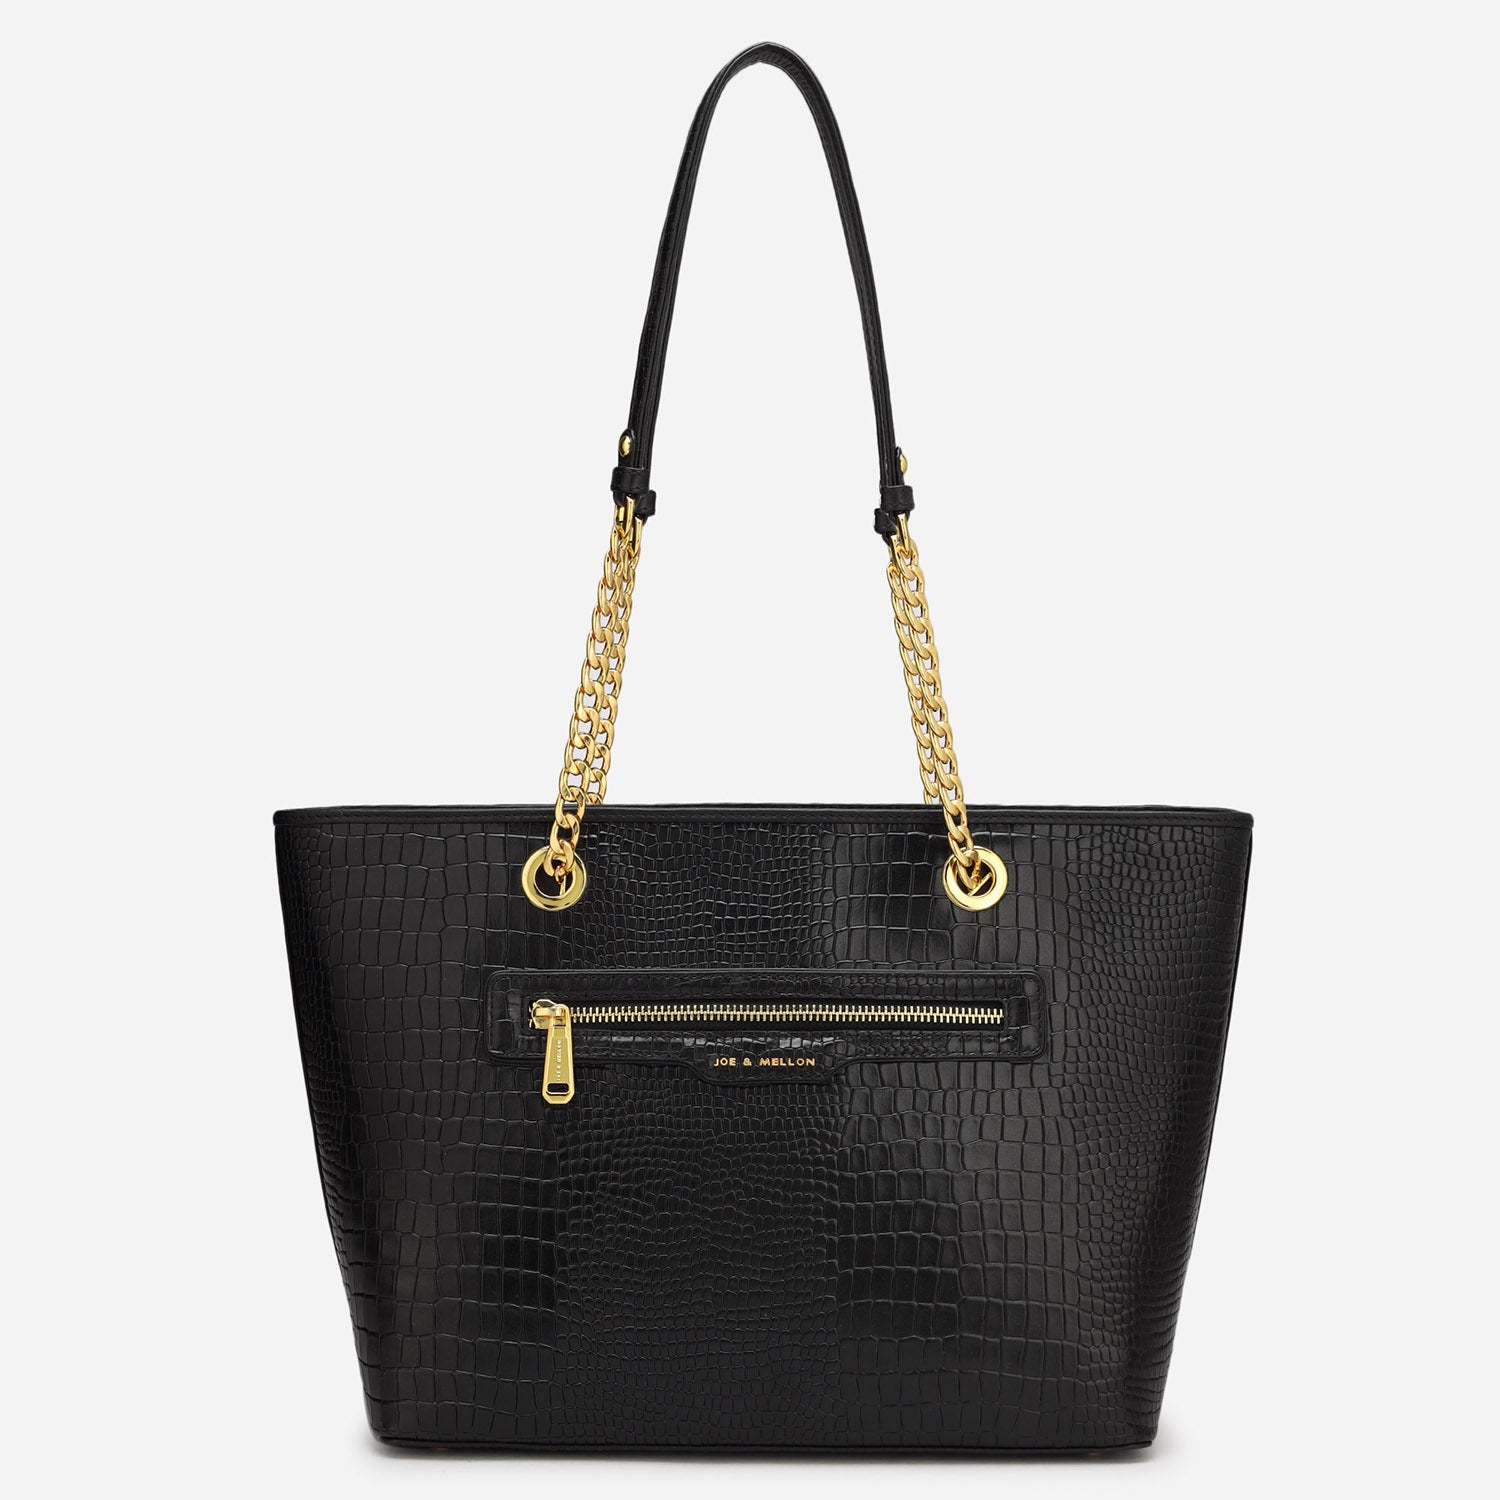 Olivia Ladies Bag - Black